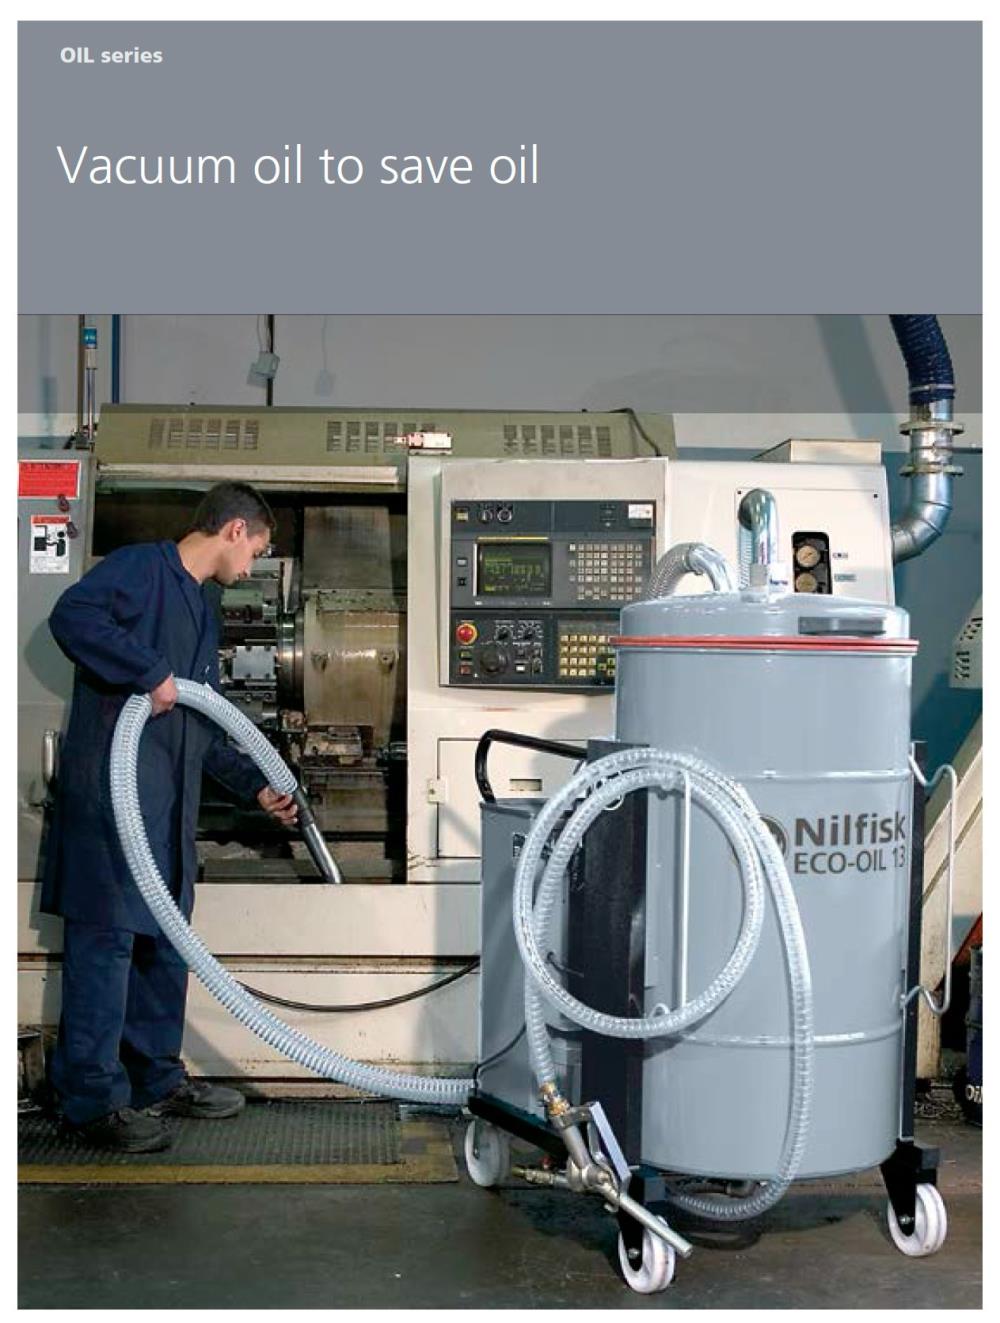 เครื่องดูดฝุ่น อุตสาหกรรม สามารถดูดน้ำมันได้ (Vacuum Oil),#ขาย #จำหน่าย #เครื่องดูดฝุ่นอุตสาหกรรม #เครื่องดูดฝุ่น #vacuumoil #เครื่องดูดฝุ่นดูดน้ำมัน #ดูดน้ำมัน #VacuumCleaning #โรงงาน #อุตสาหกรรม #Industrial #บริการซ่อม #ทำความสะอาด #carcare #dealer #distributor #ตัวแทนจำหน่าย #eec #สินค้าอุตสาหกรรม #นิคมอุตสาหกรรม #engineer #engineering #construction #รับเหมา #ก่อสร้าง #workicon #workicontech,,Machinery and Process Equipment/Machinery/Vacuum Cleaner